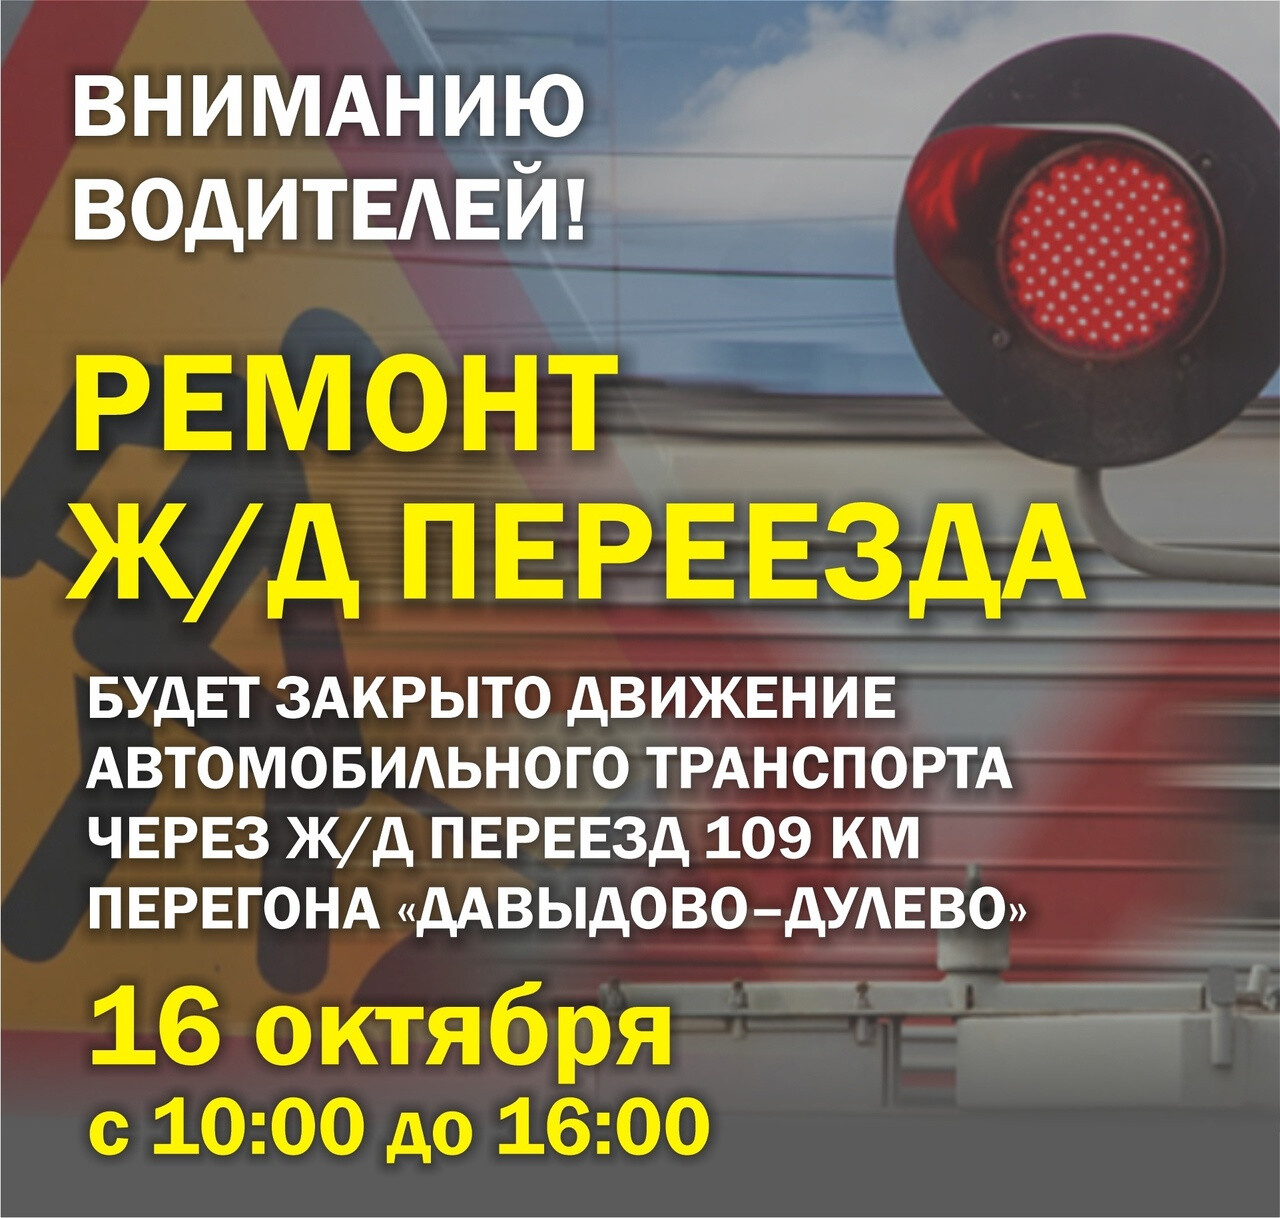 Движение автомобилей через ж/д переезд 109 км перегона «Давыдово-Дулево» будет закрыто